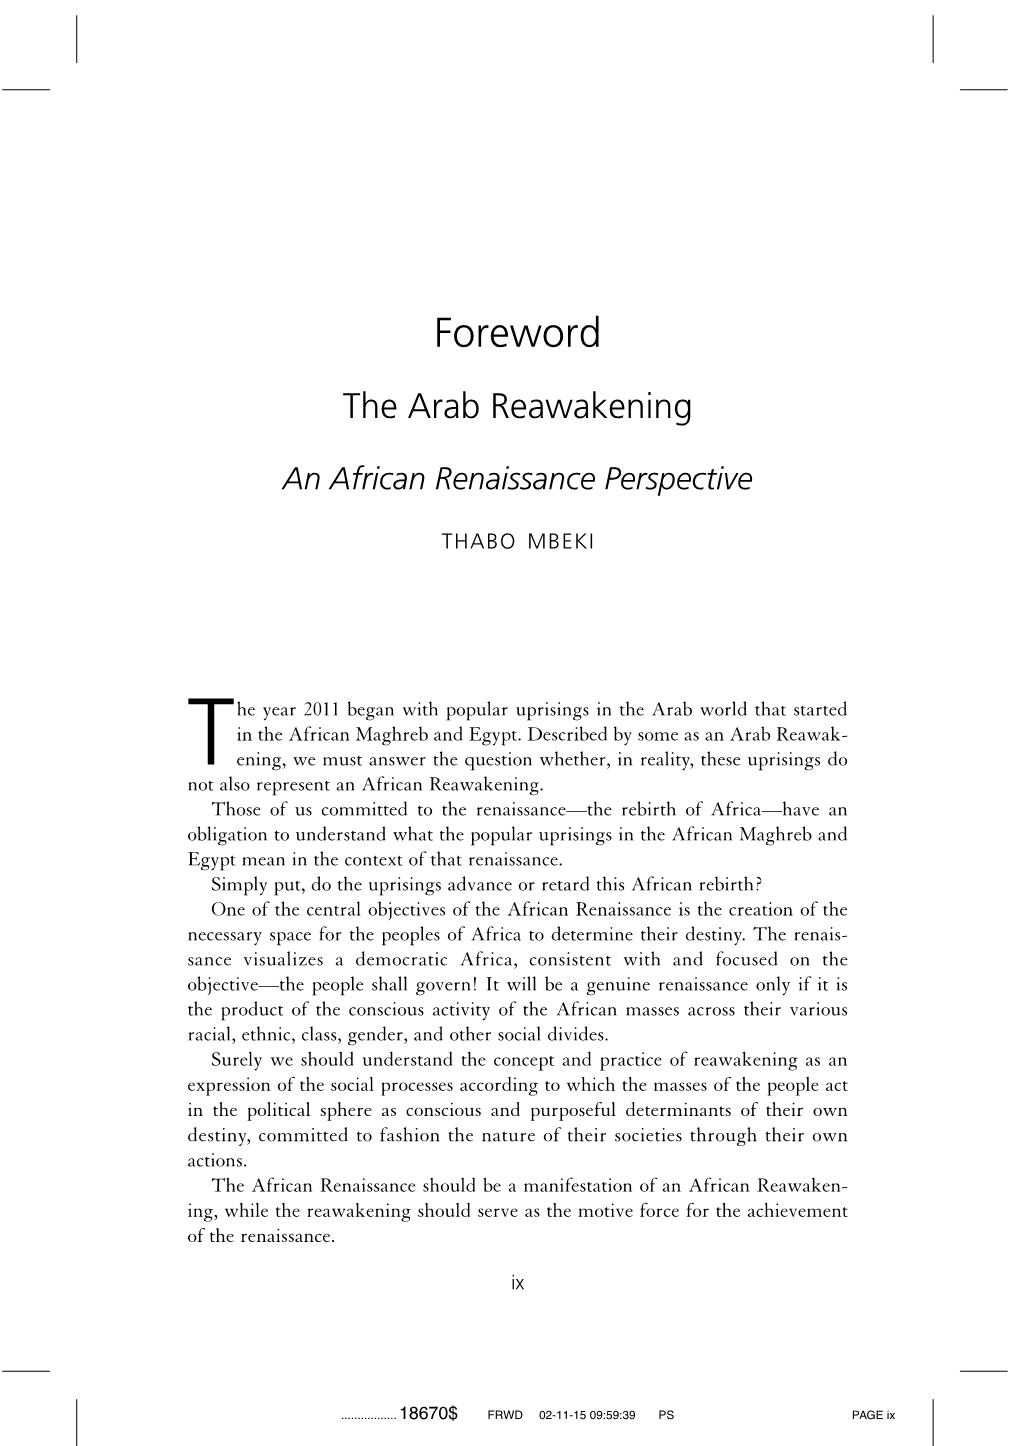 Foreword the Arab Reawakening